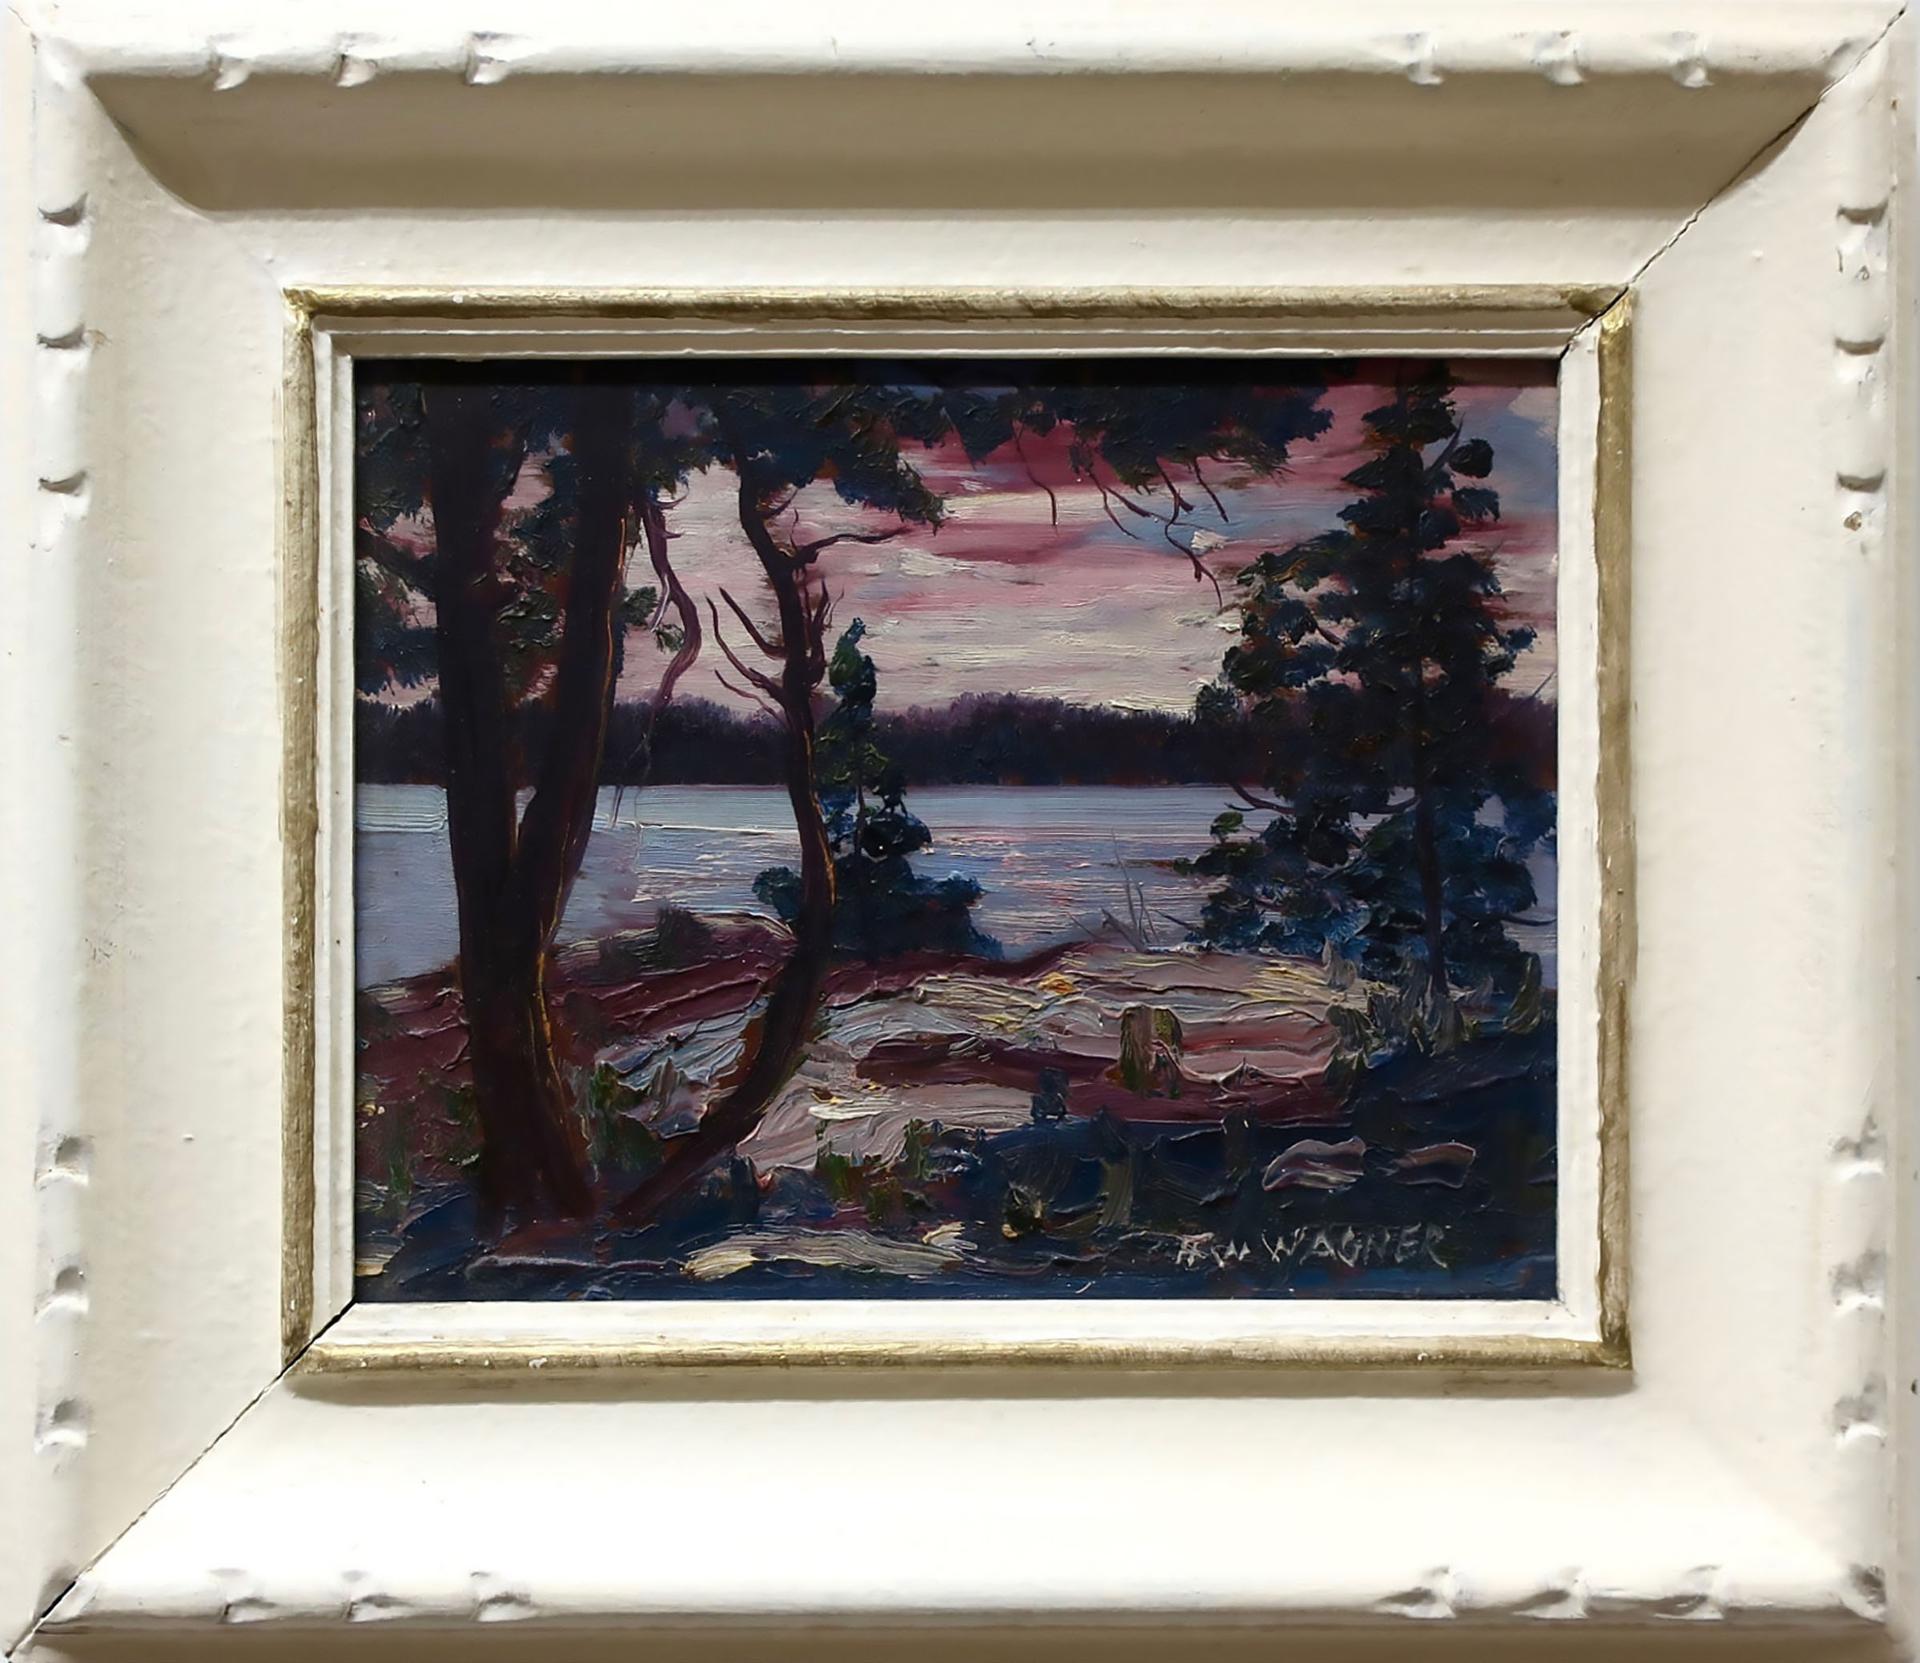 Herbert William Wagner (1889-1948) - Evening Lake Study